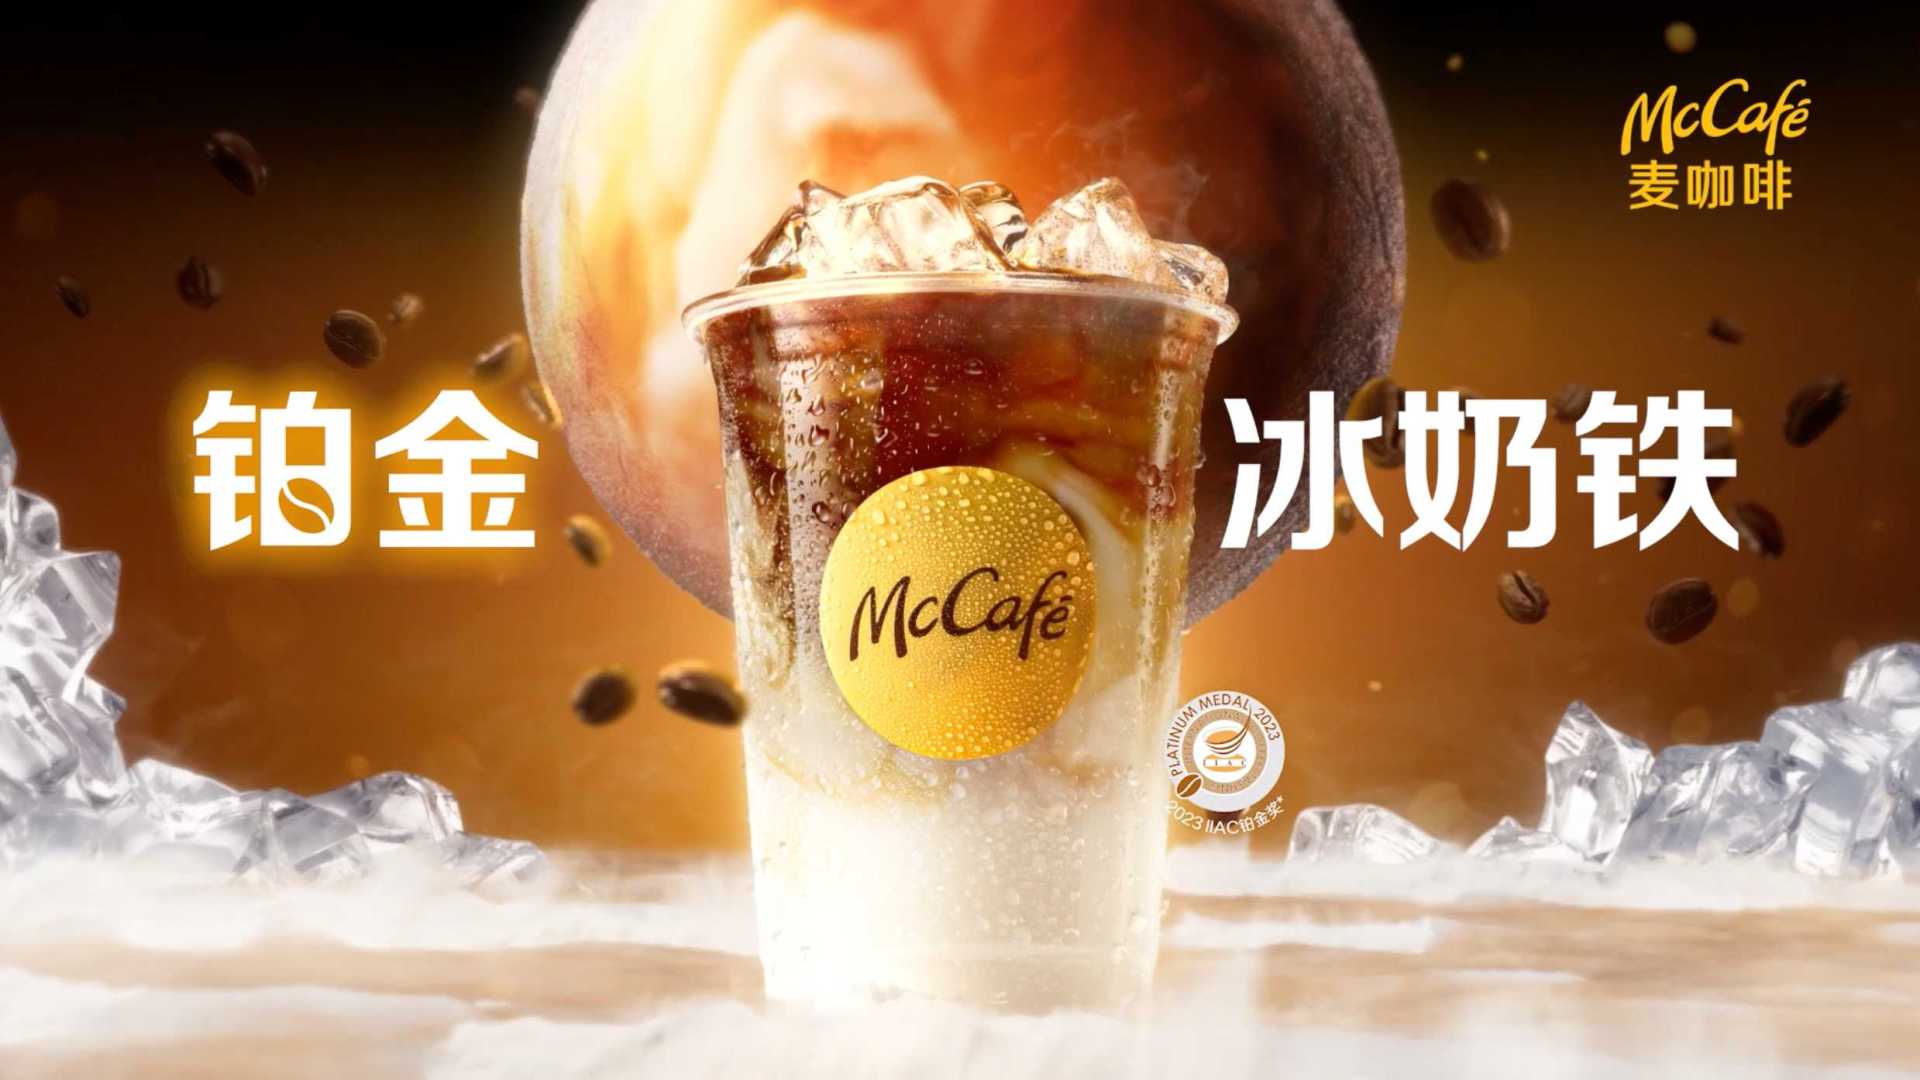 麦咖啡McCafe铂金冰奶铁